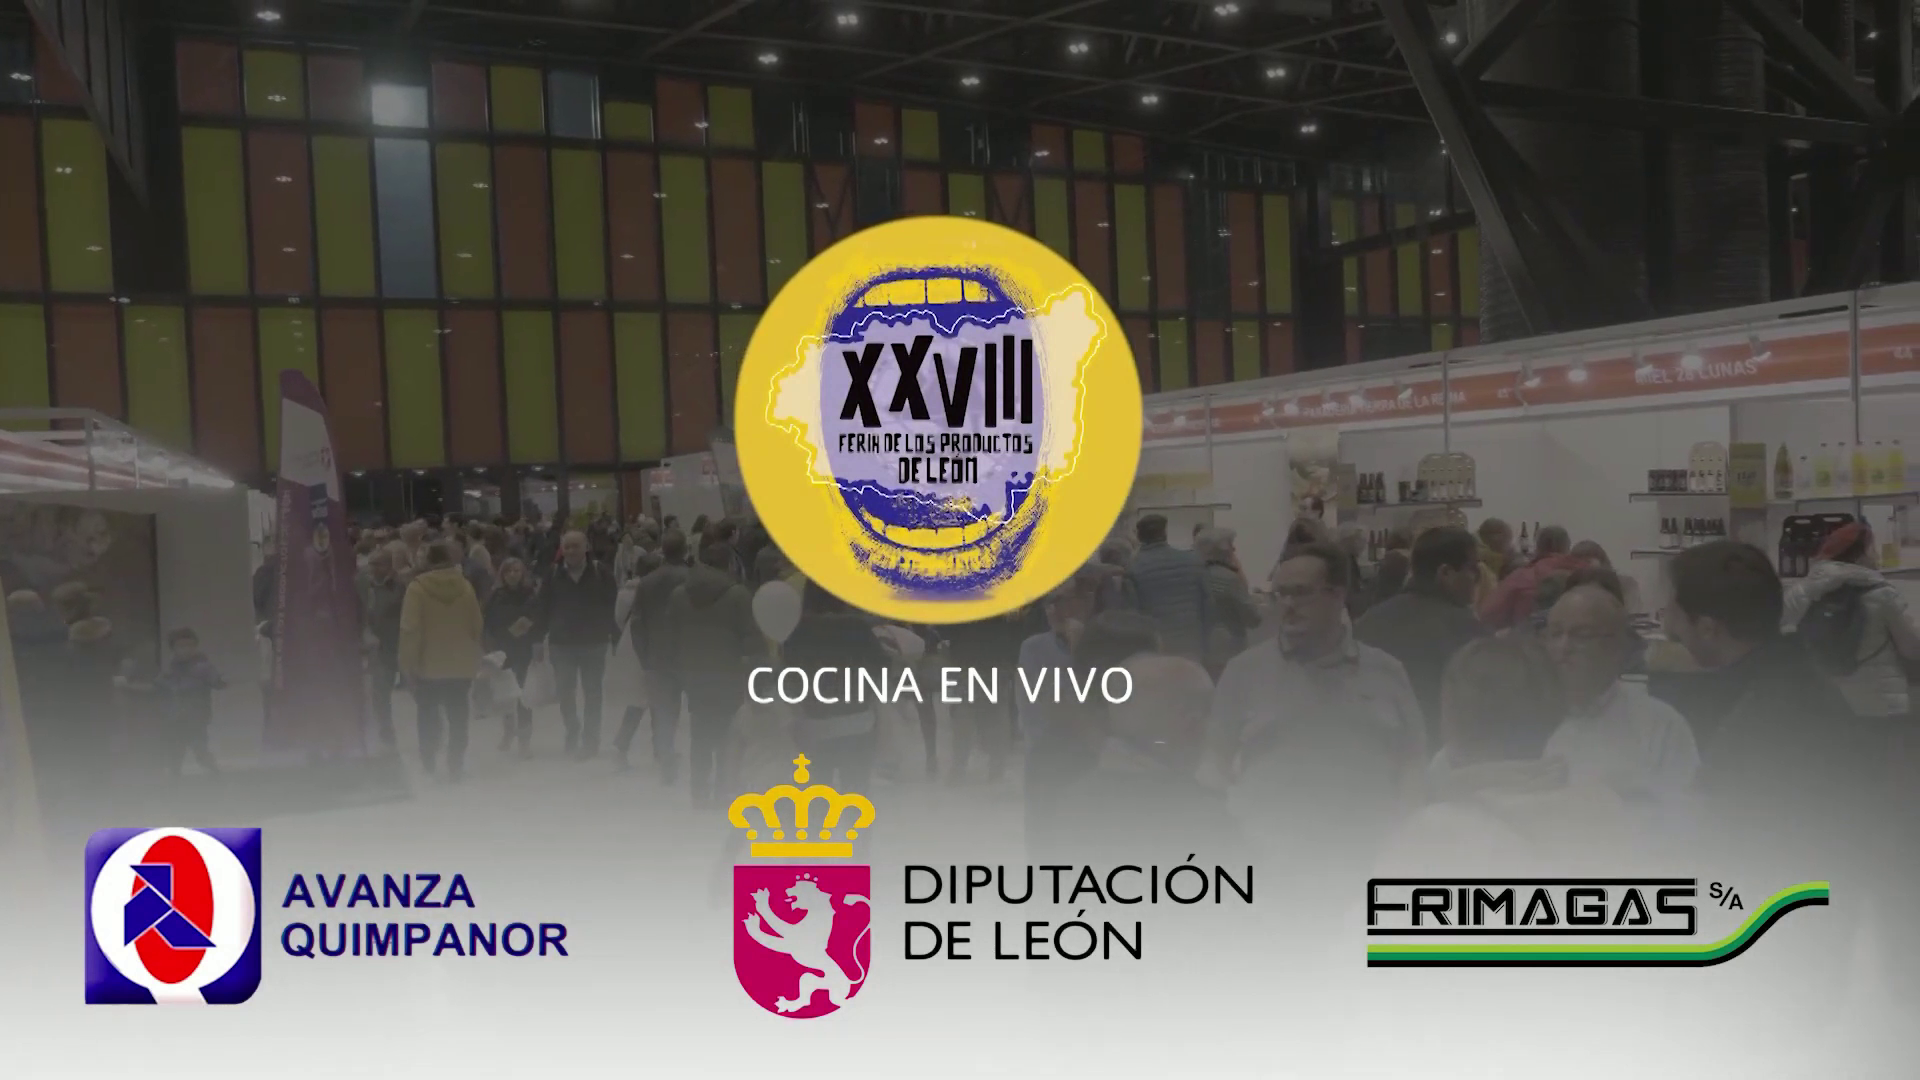 Cocina en vivo - Programa de la Feria de productos de León